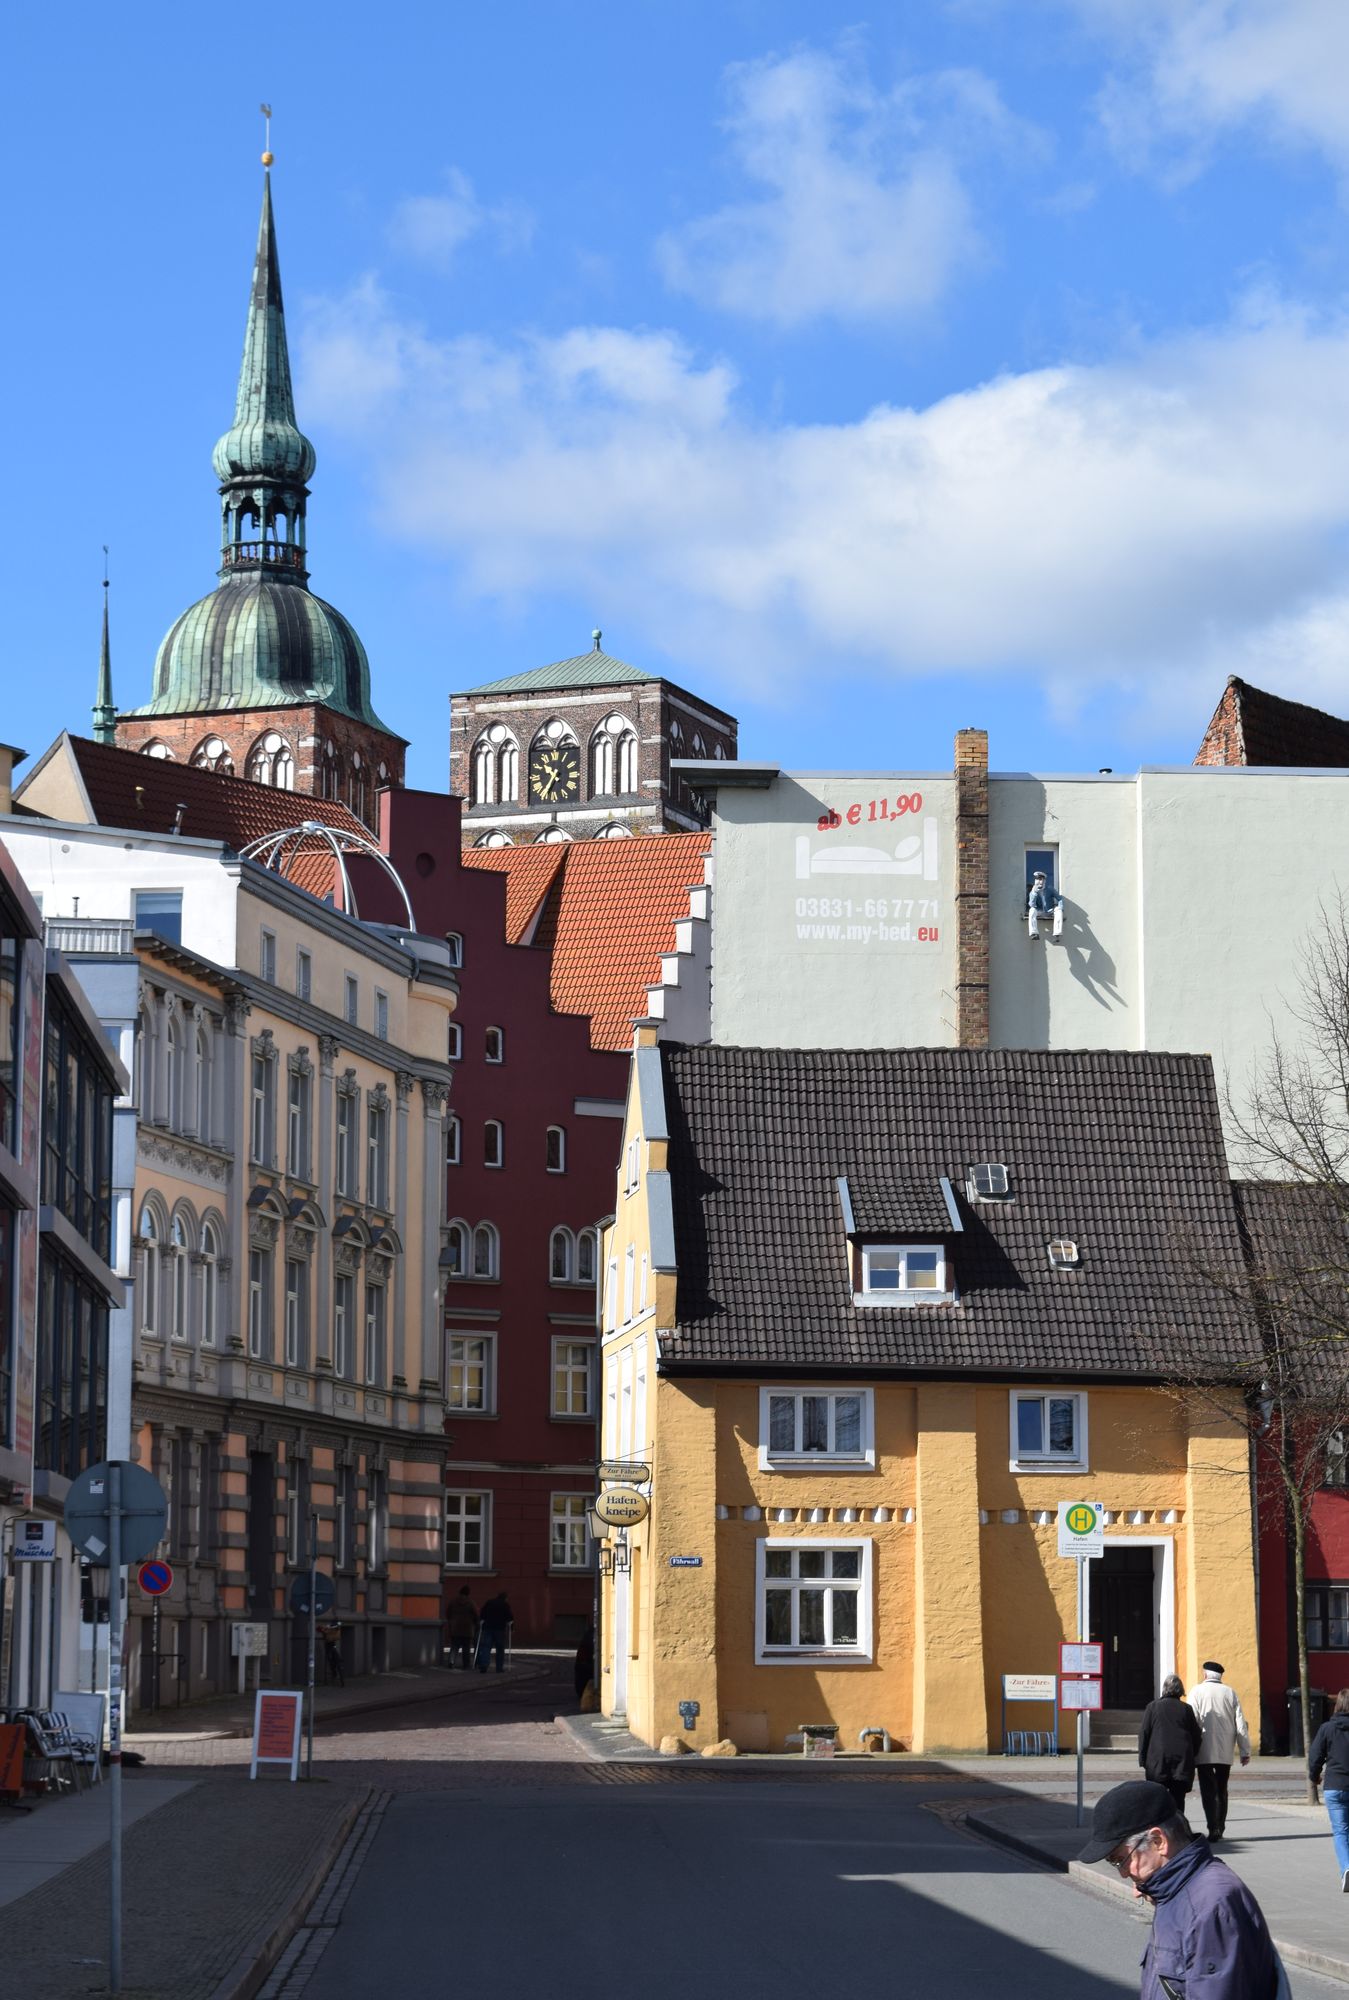 Hamnpubben ”Zur Fähre” från 1332 är en av världens äldsta. Gatans svängda form och den oregelbundna gatukorsningen längre fram begränsar synfältet.